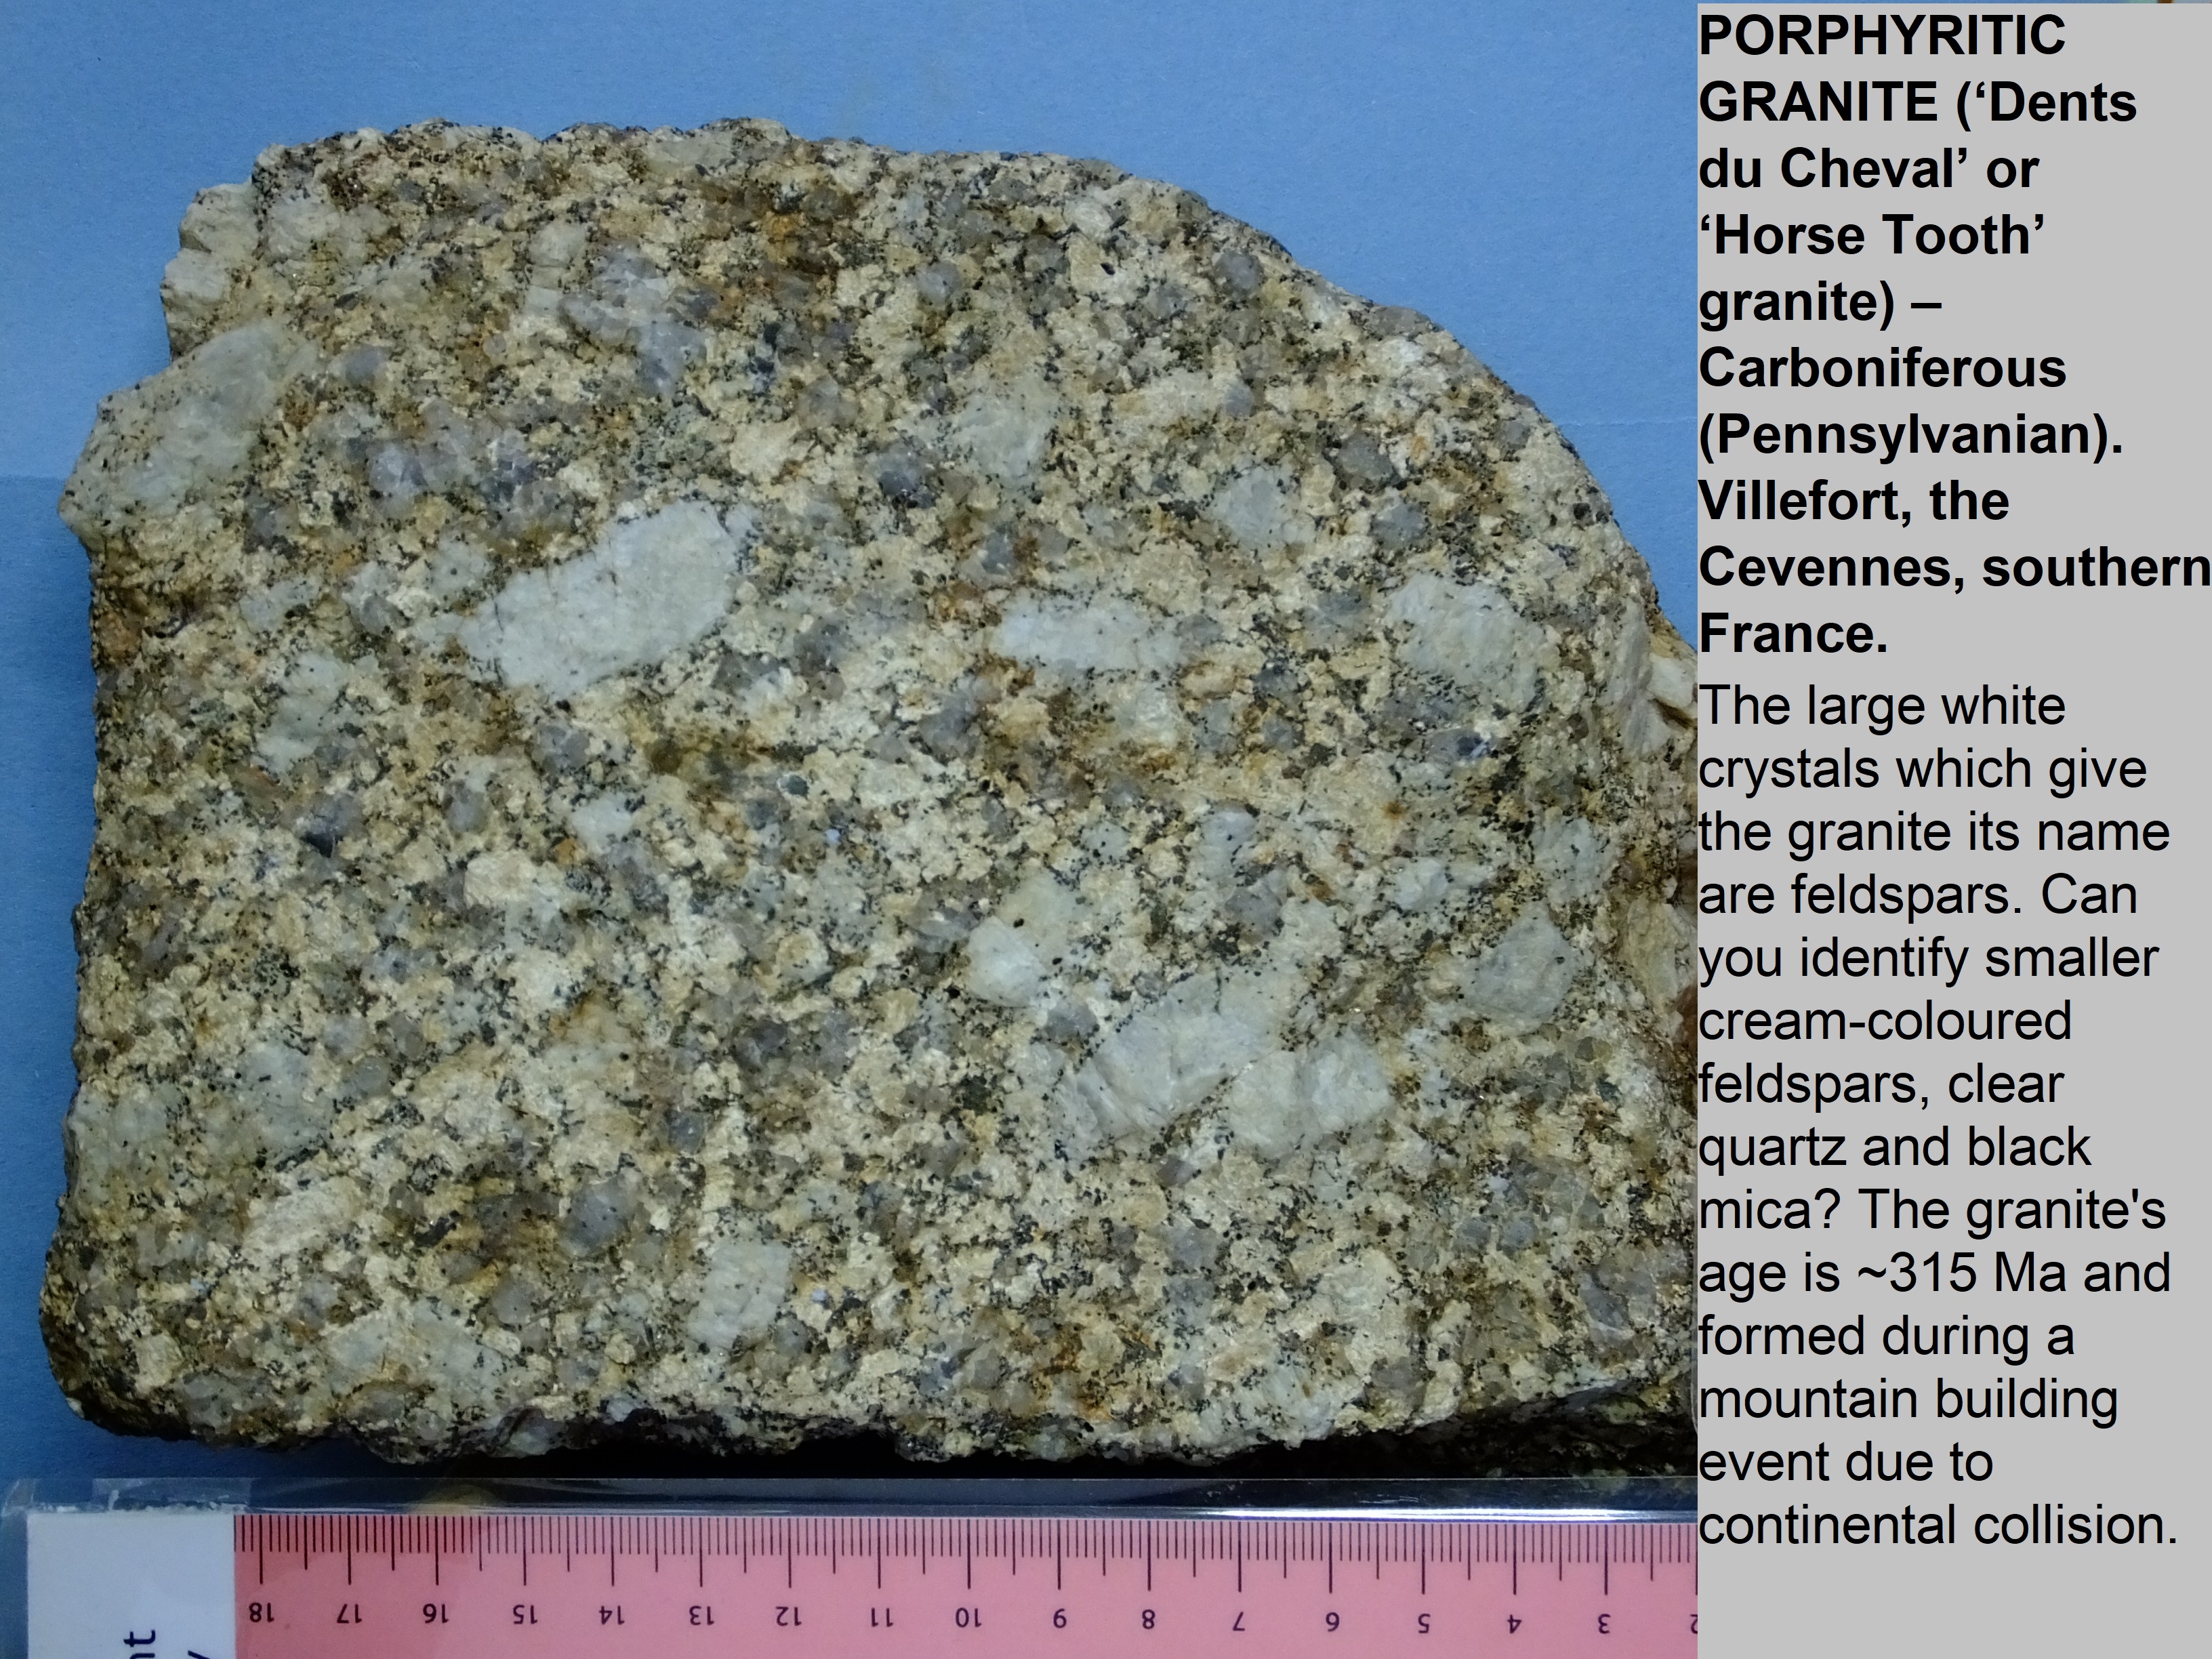 'horsetooth' porphyritic granite